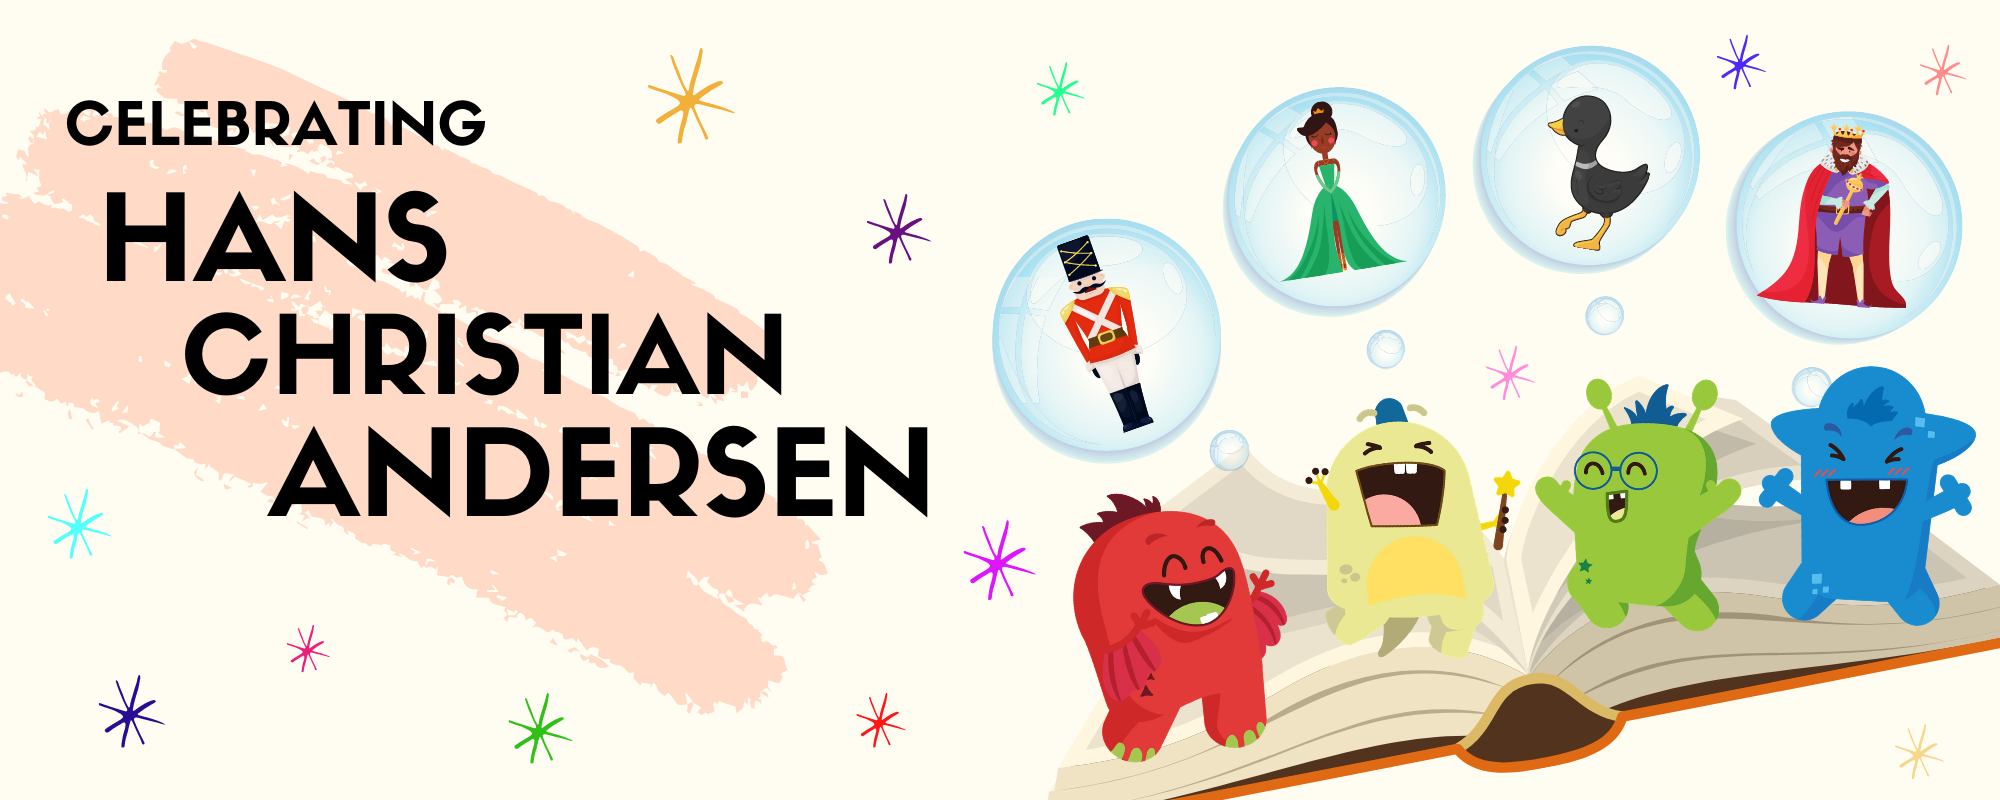 Celebrating Hans Christian Andersen